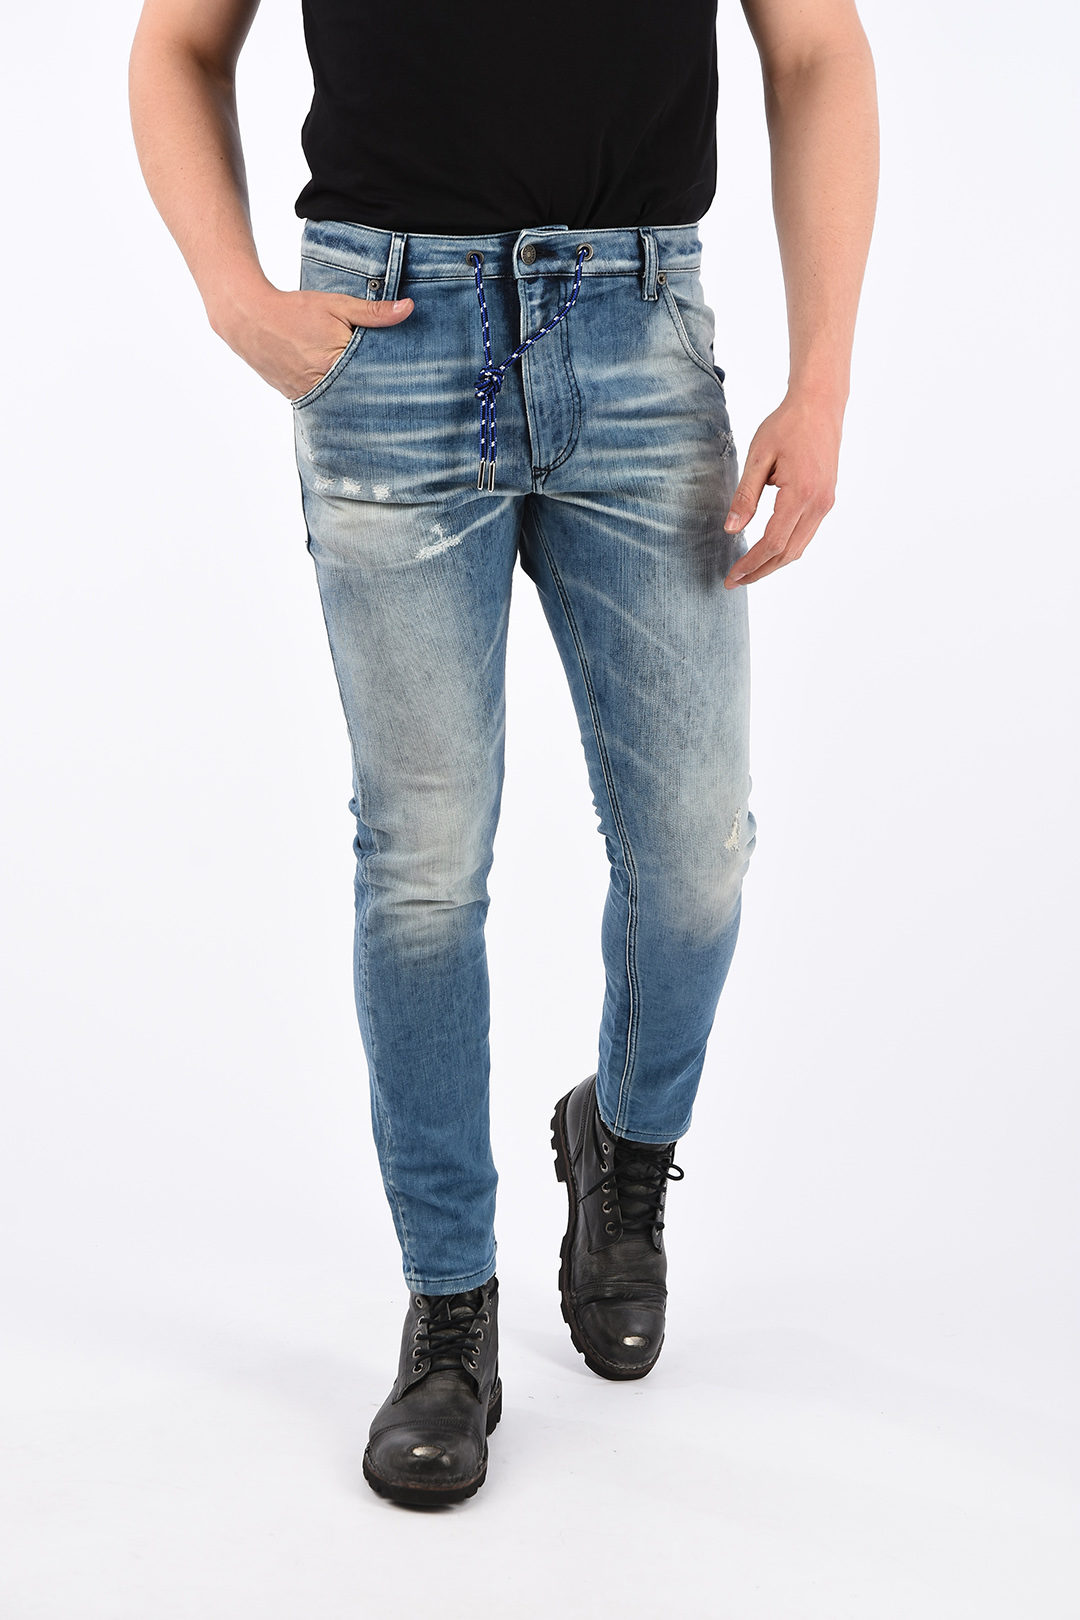 lettelse afrikansk Site line Diesel 17cm Stonewashed KROOLEY-X-T Sweat Jogg Jeans men - Glamood Outlet